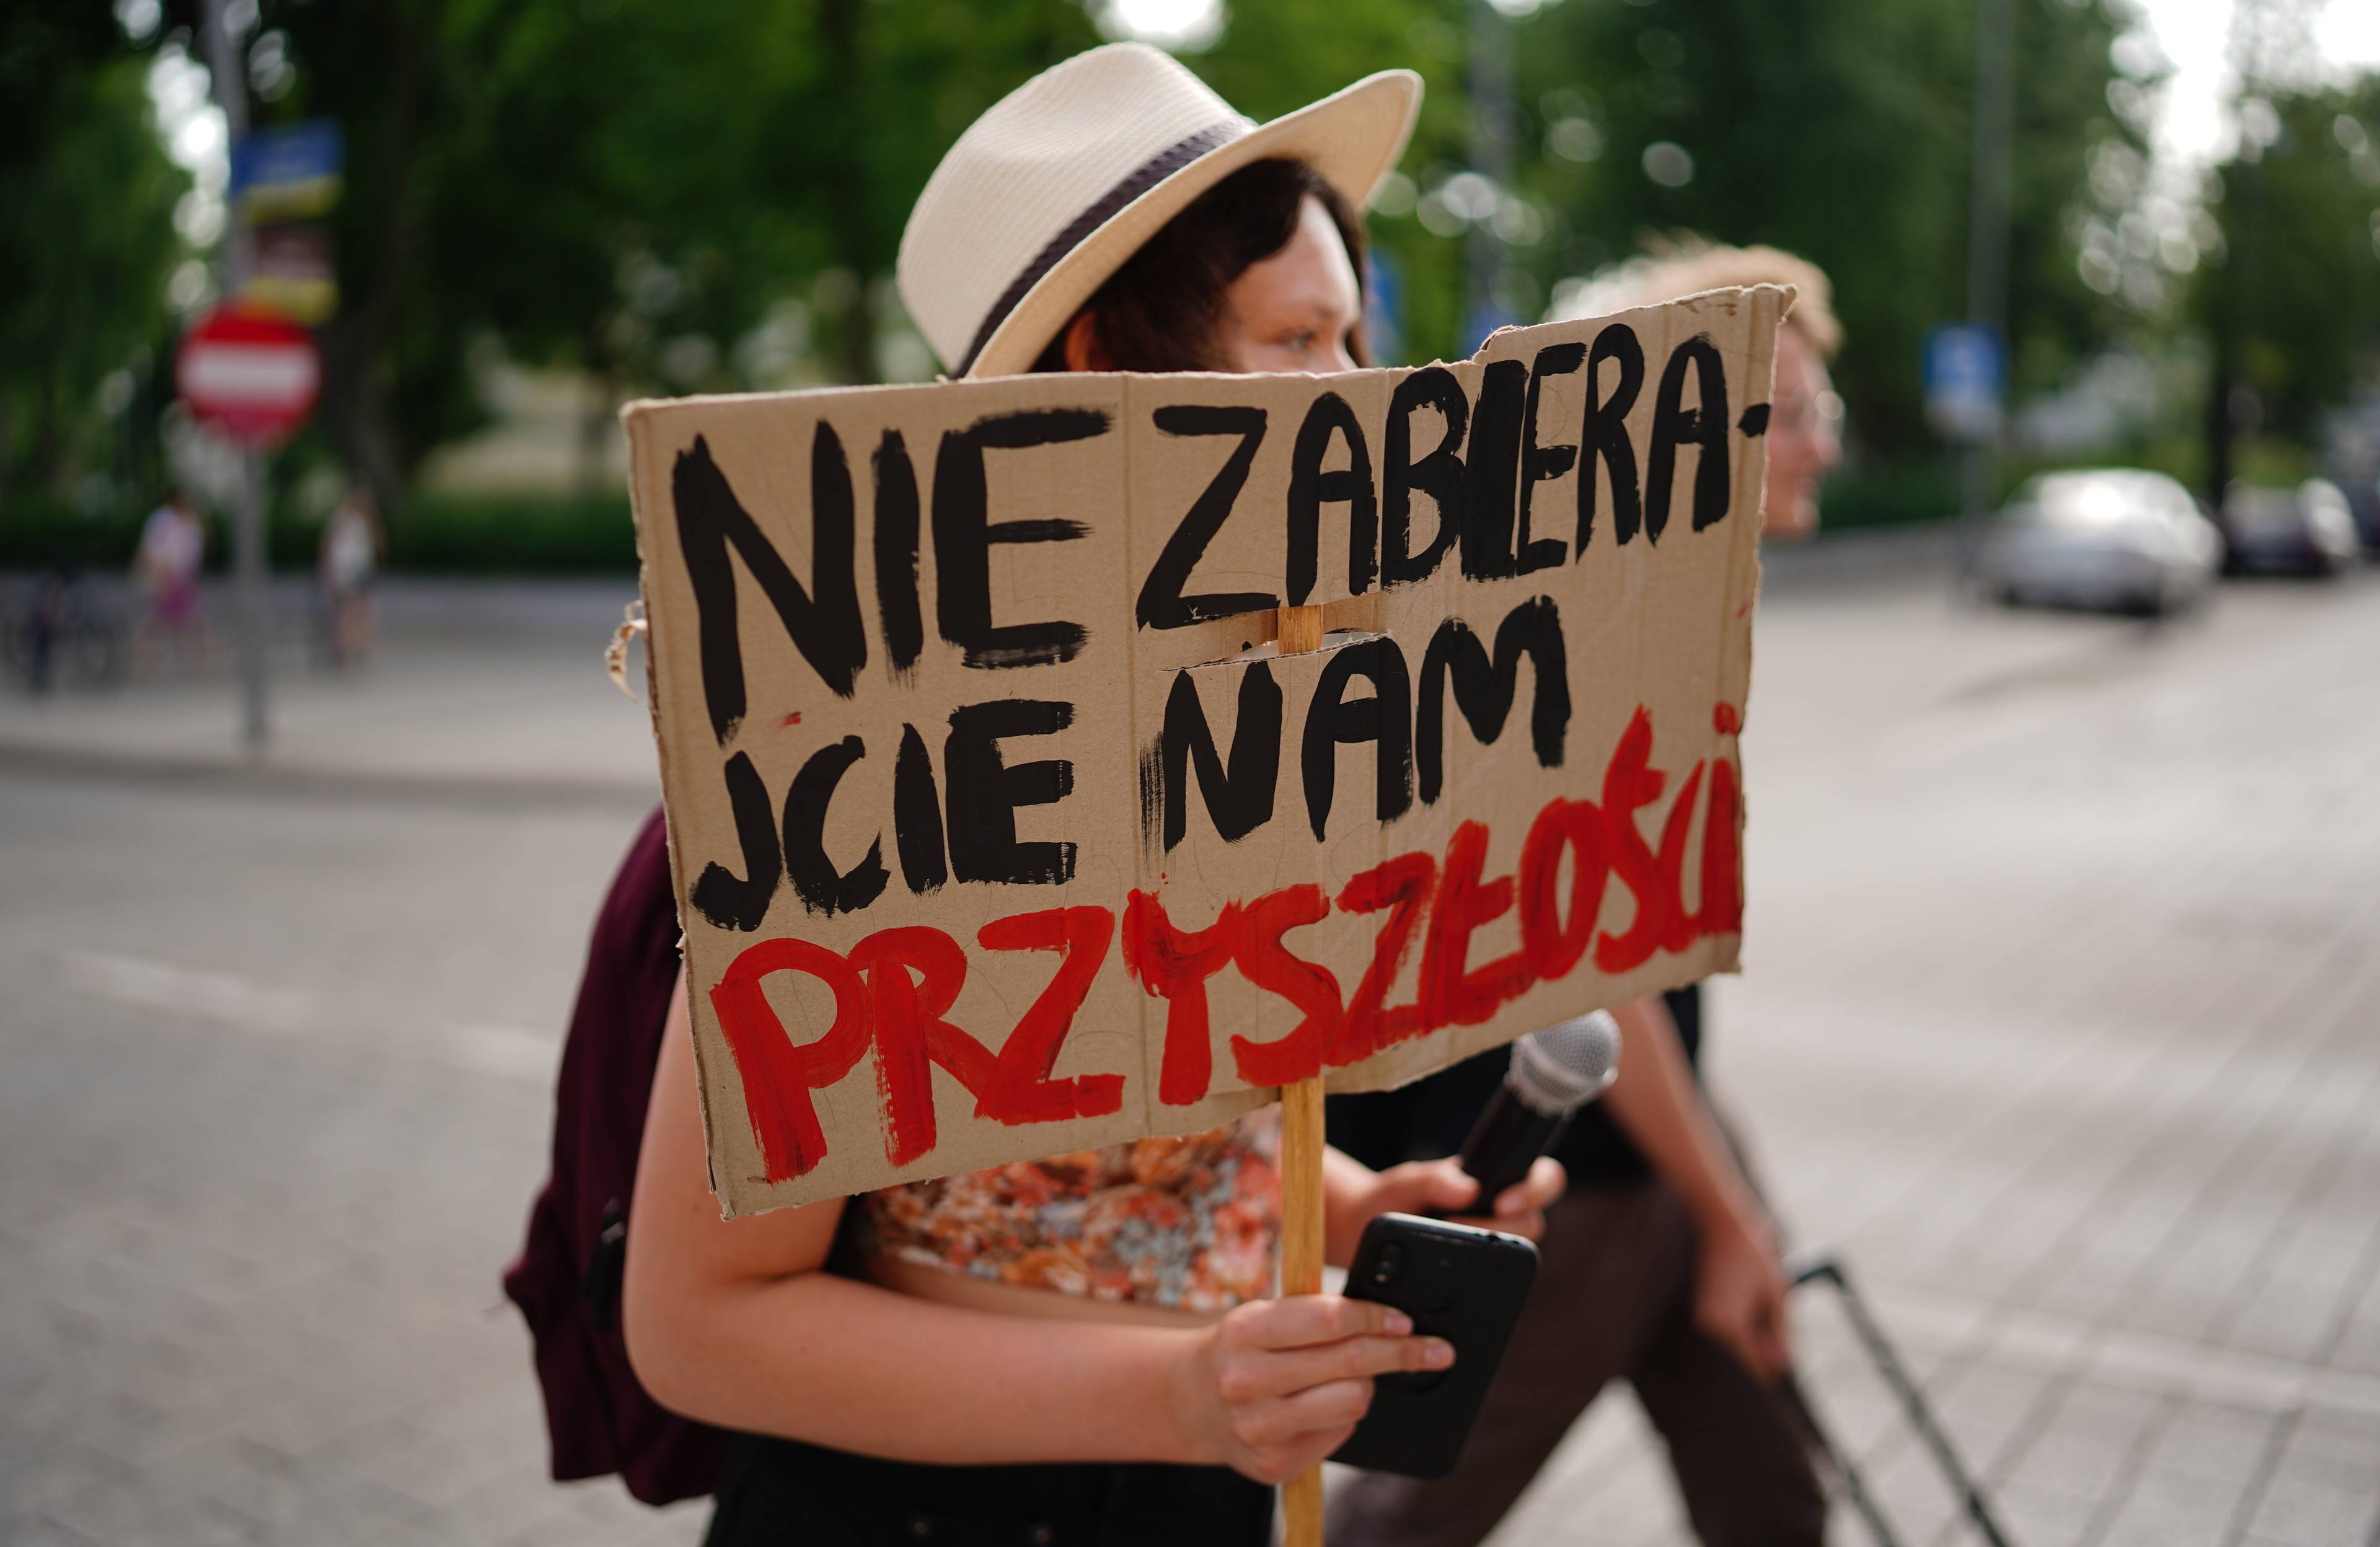 Młoda kobieta z plakatem, na którym napisała "Nie zabierajcie nam przyszłości"